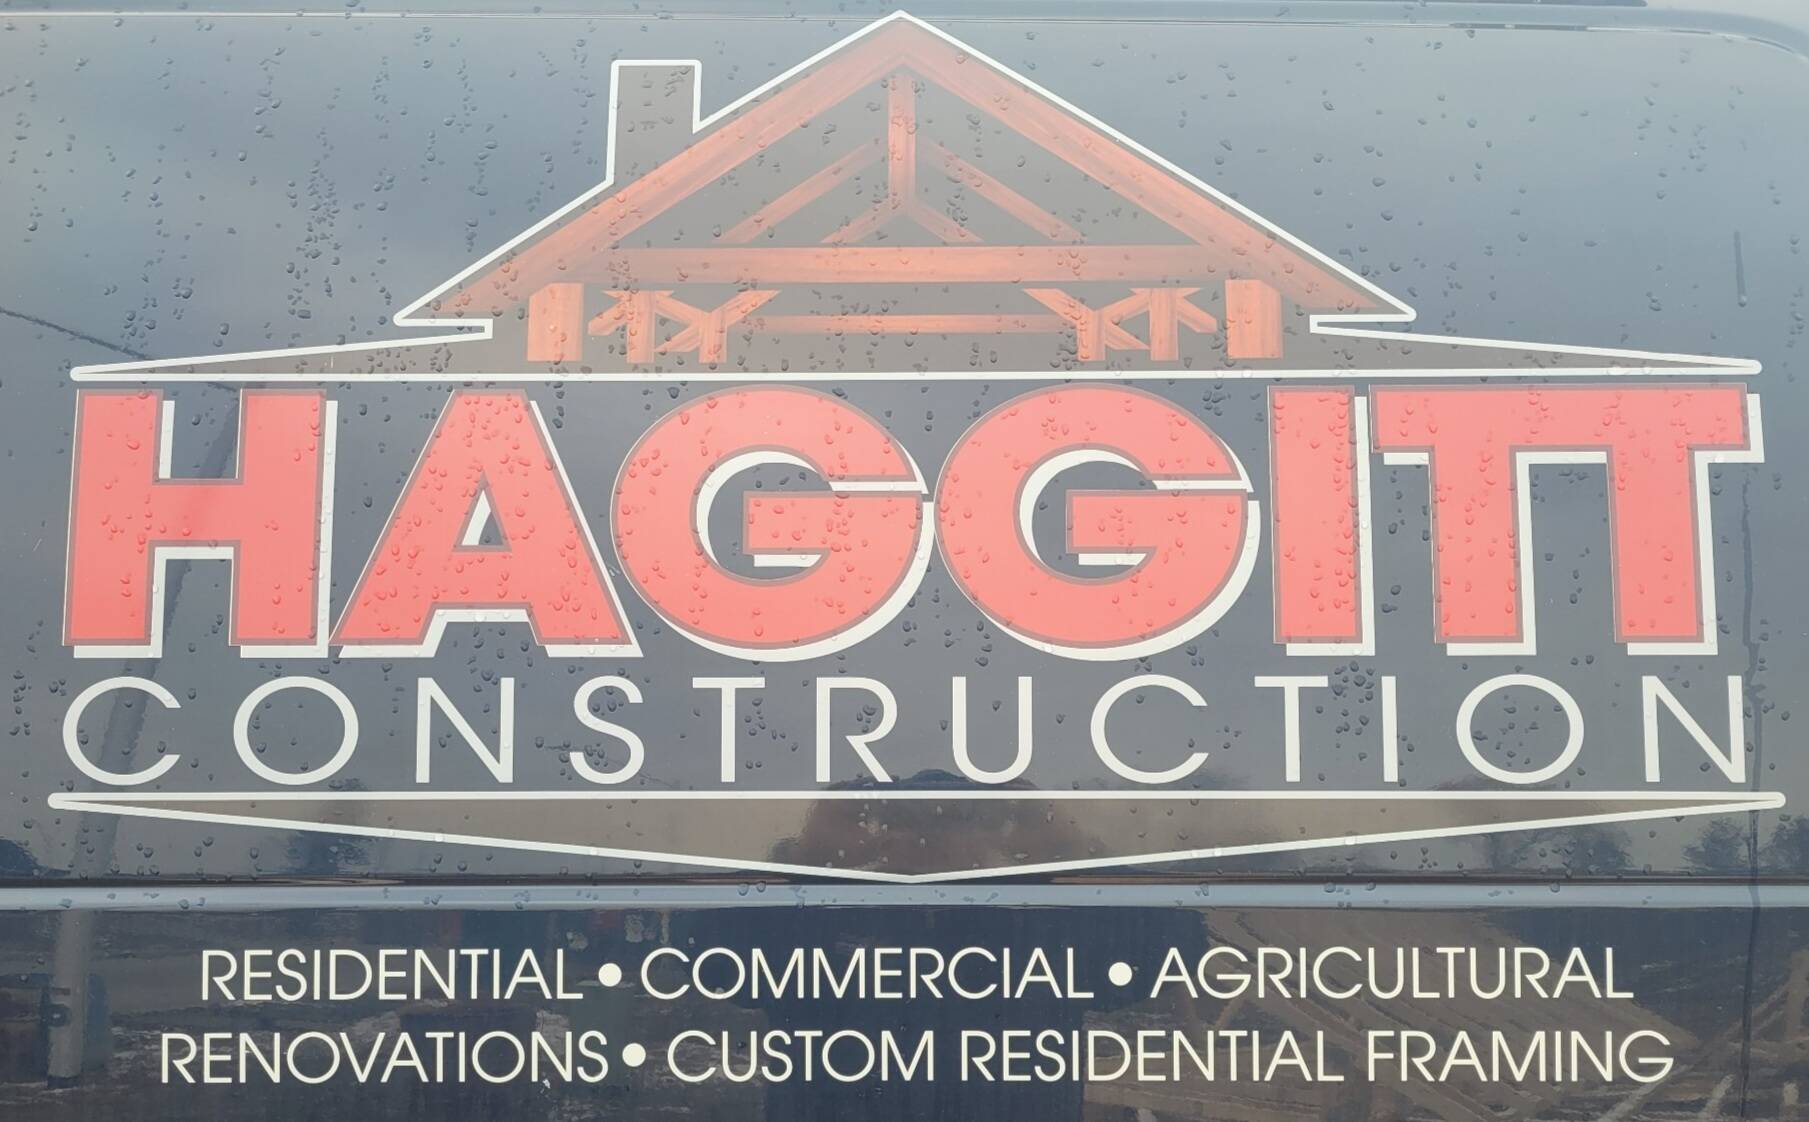 Haggitt Construction